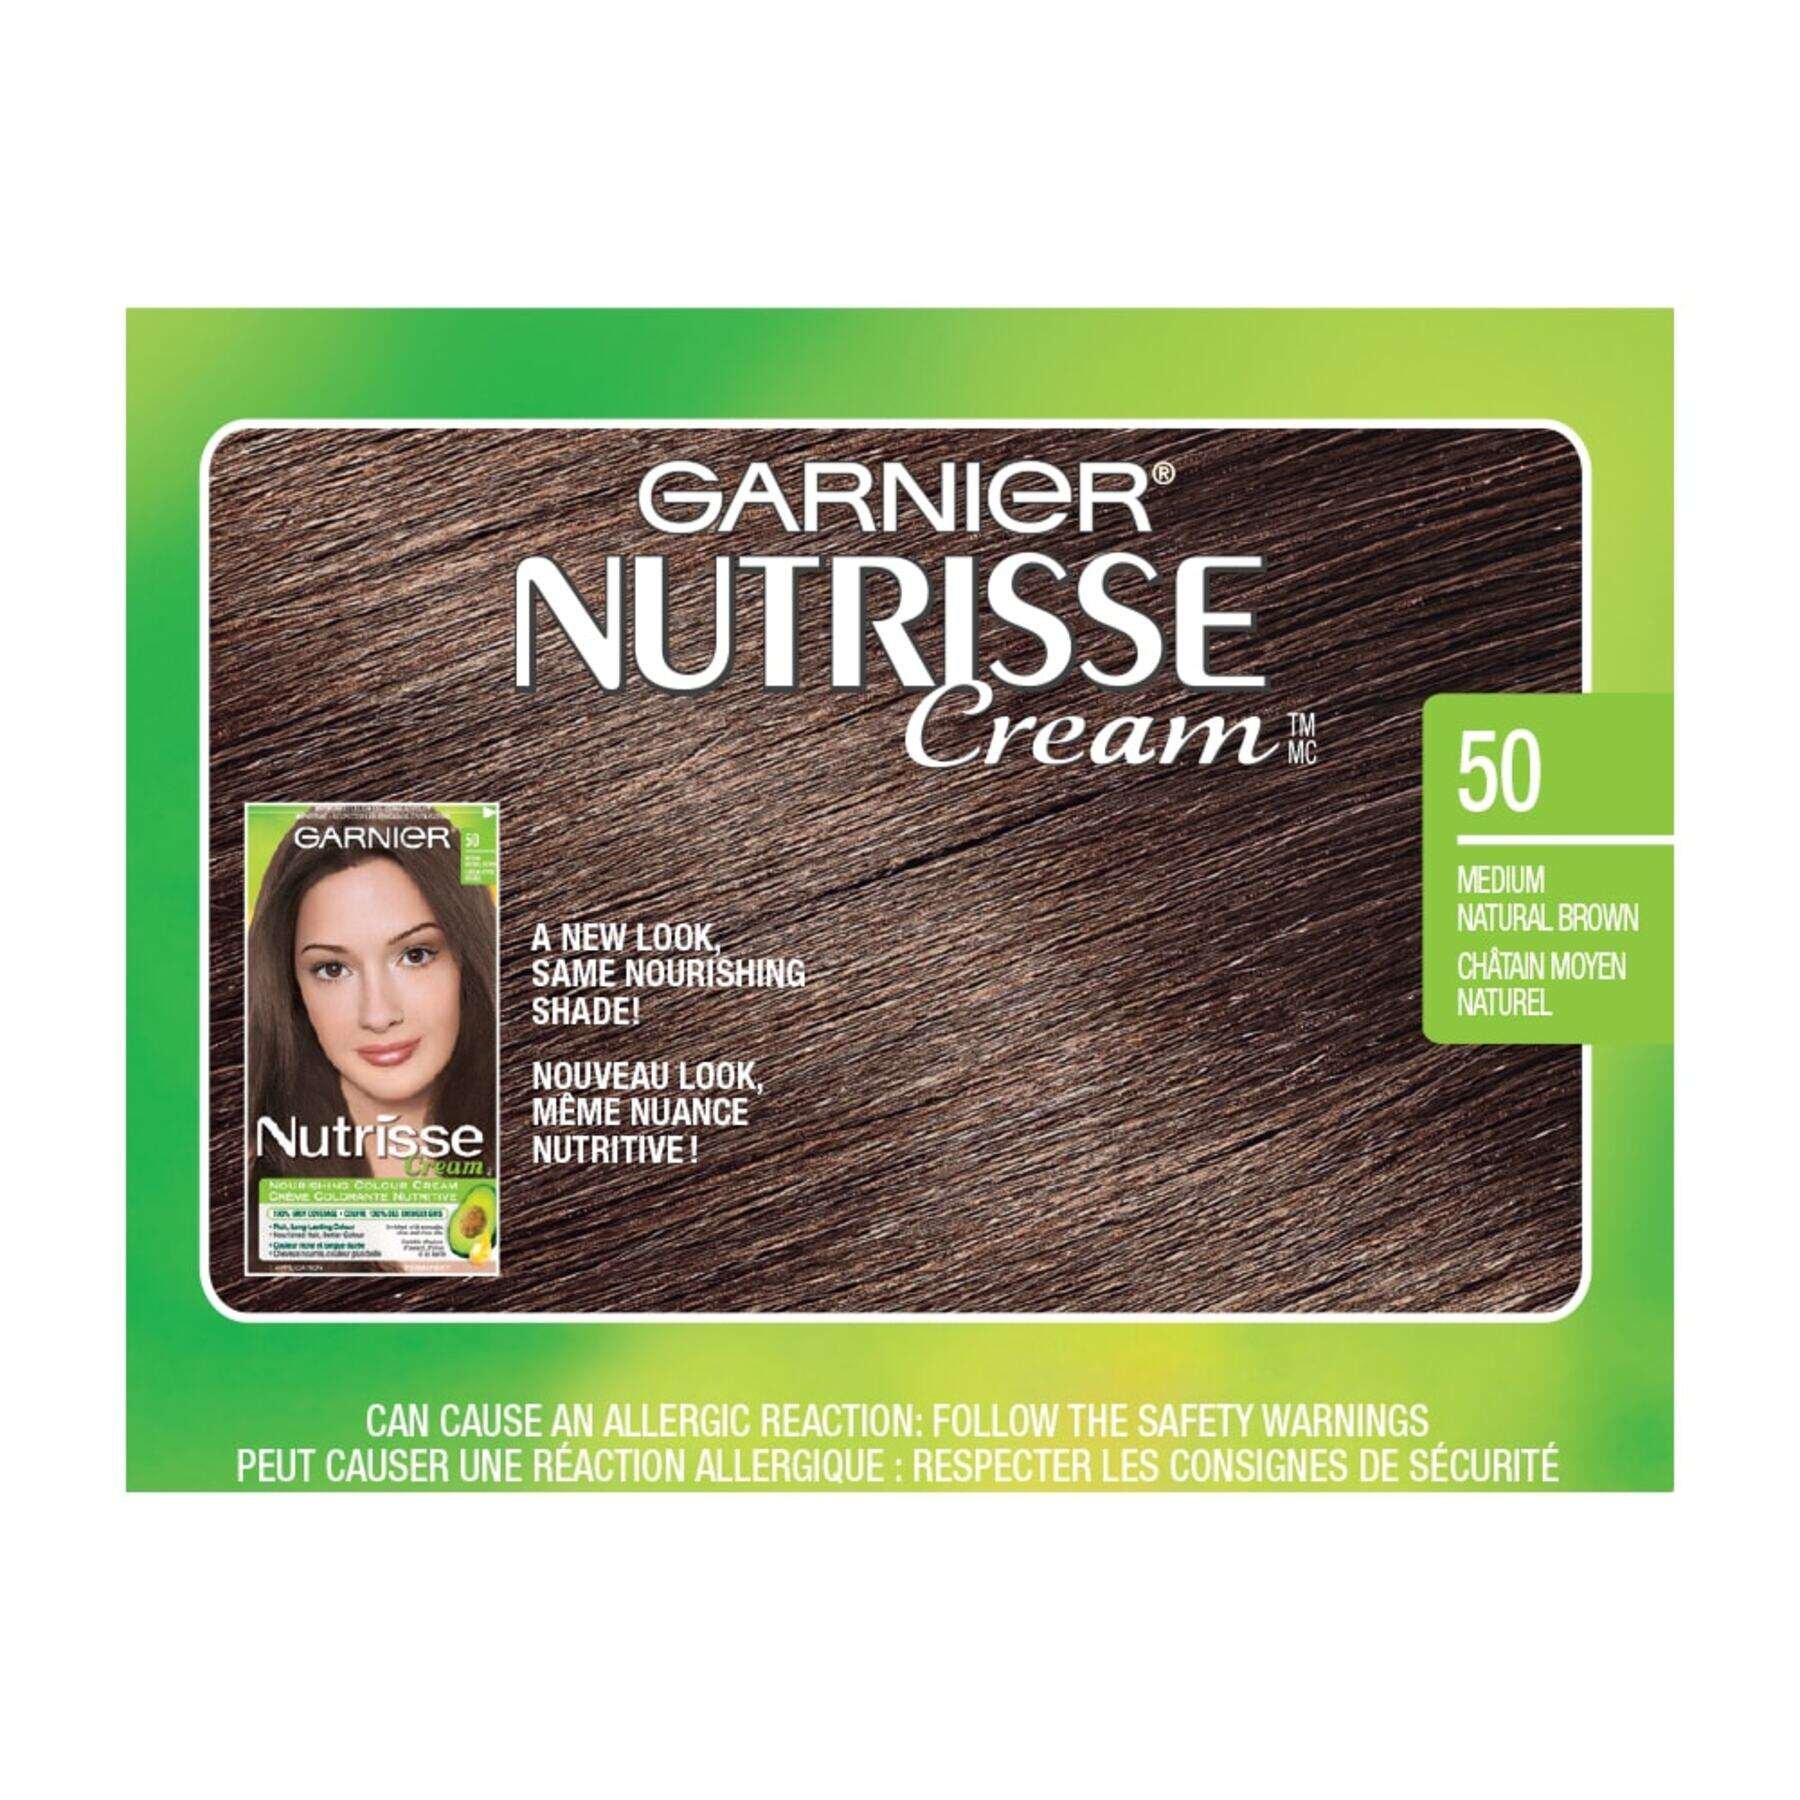 garnier hair dye nutrisse cream 50 medium natural brown 0770103447087 swatch